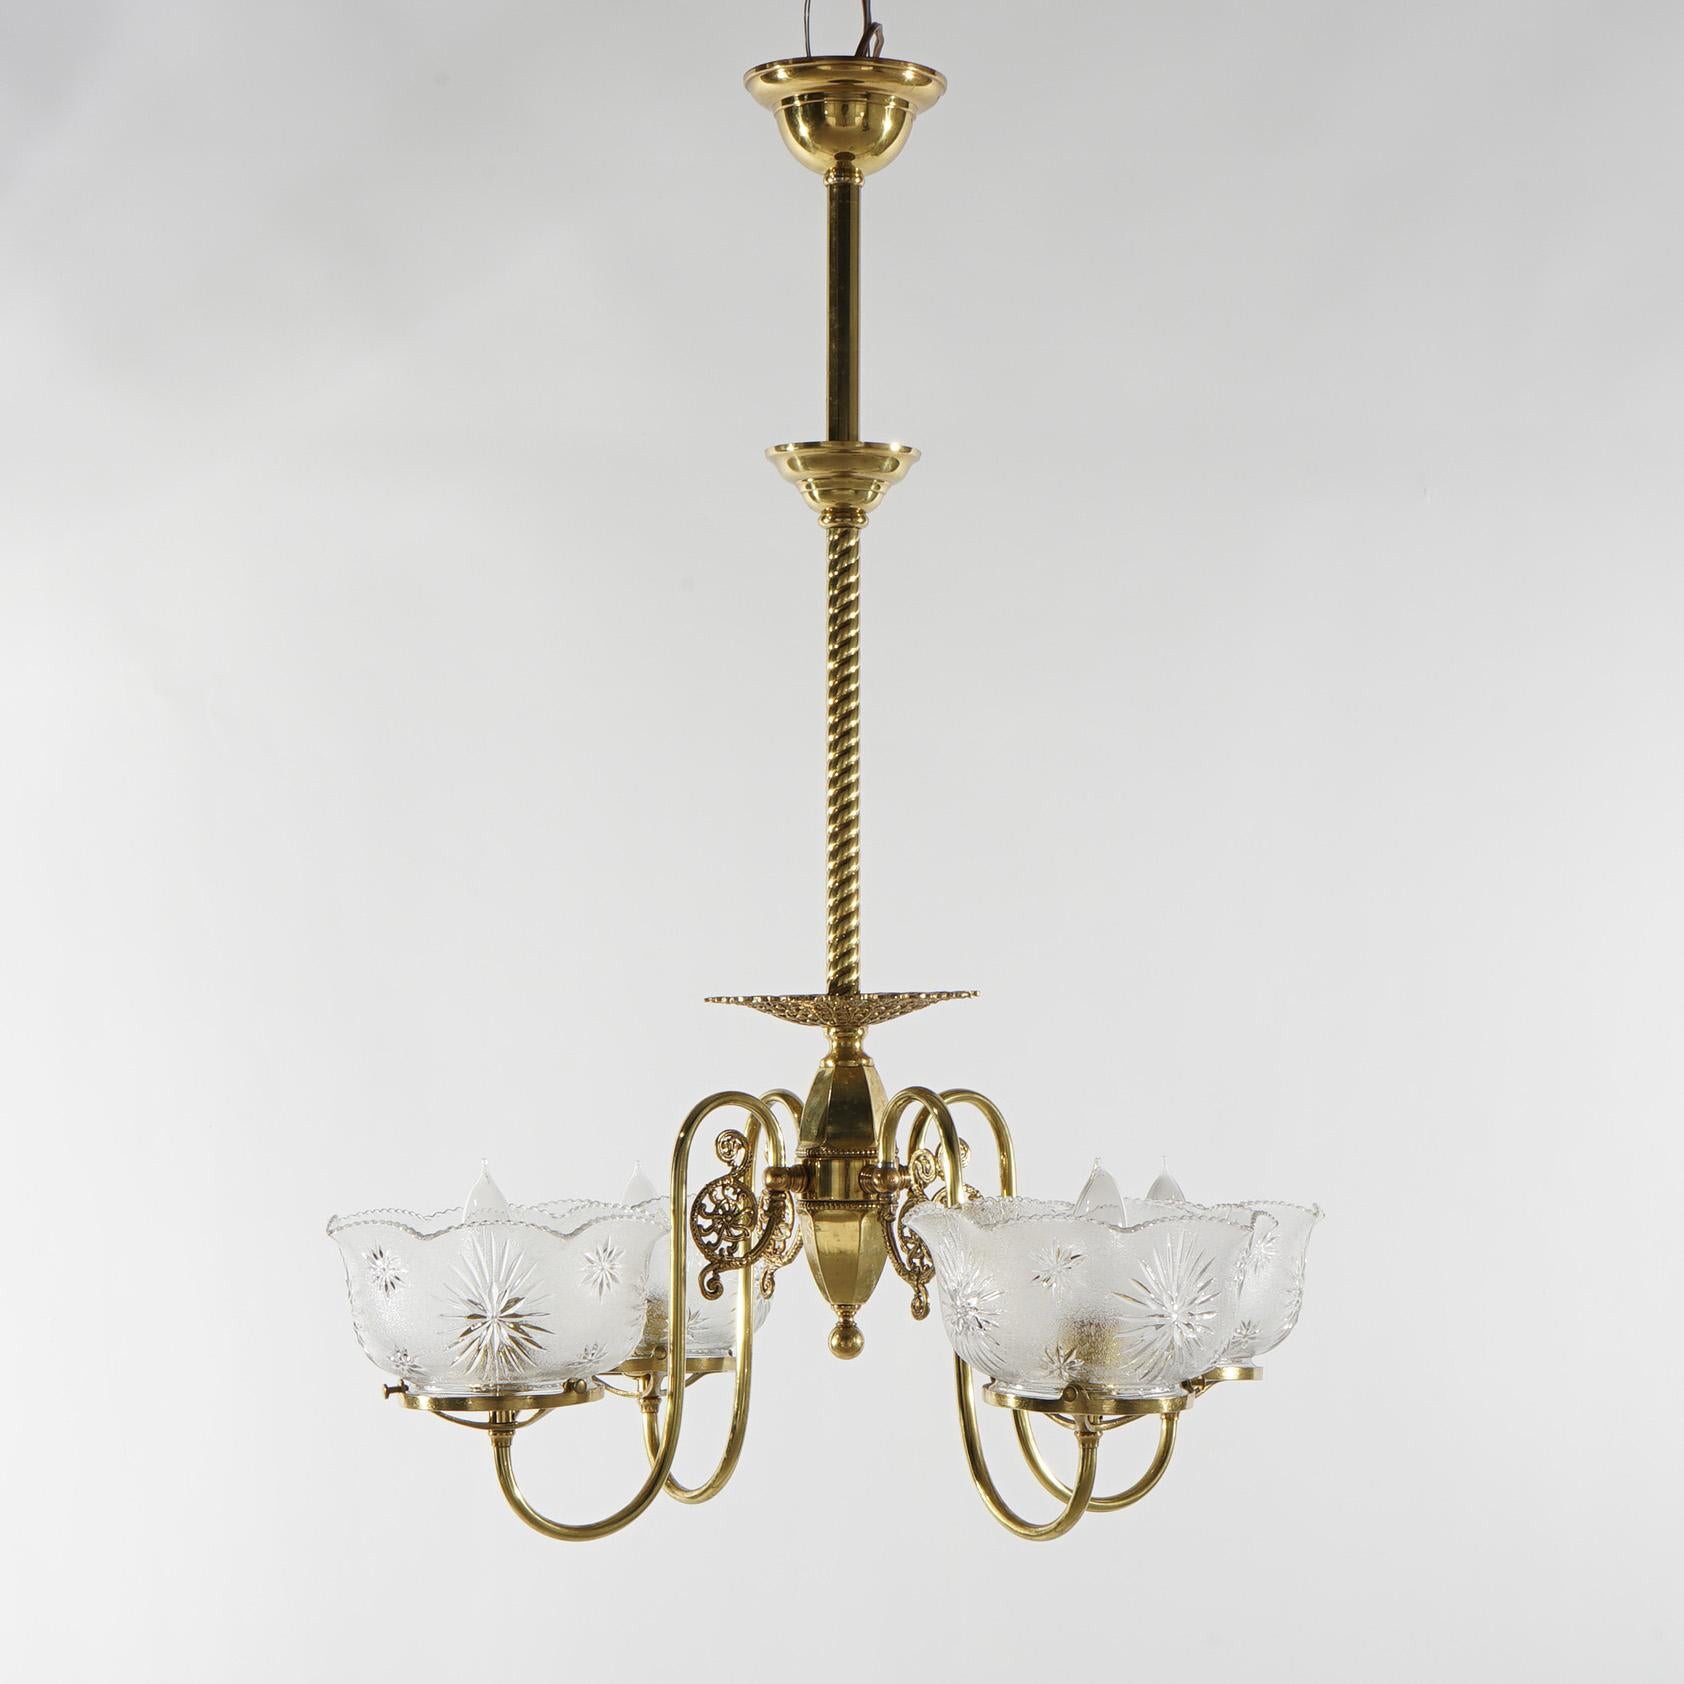 Ein antiker viktorianischer Kronleuchter bietet einen Messingrahmen mit vier spiralförmigen Armen, die in Leuchten mit Glasschirmen enden, um 1880

Maße - 31 